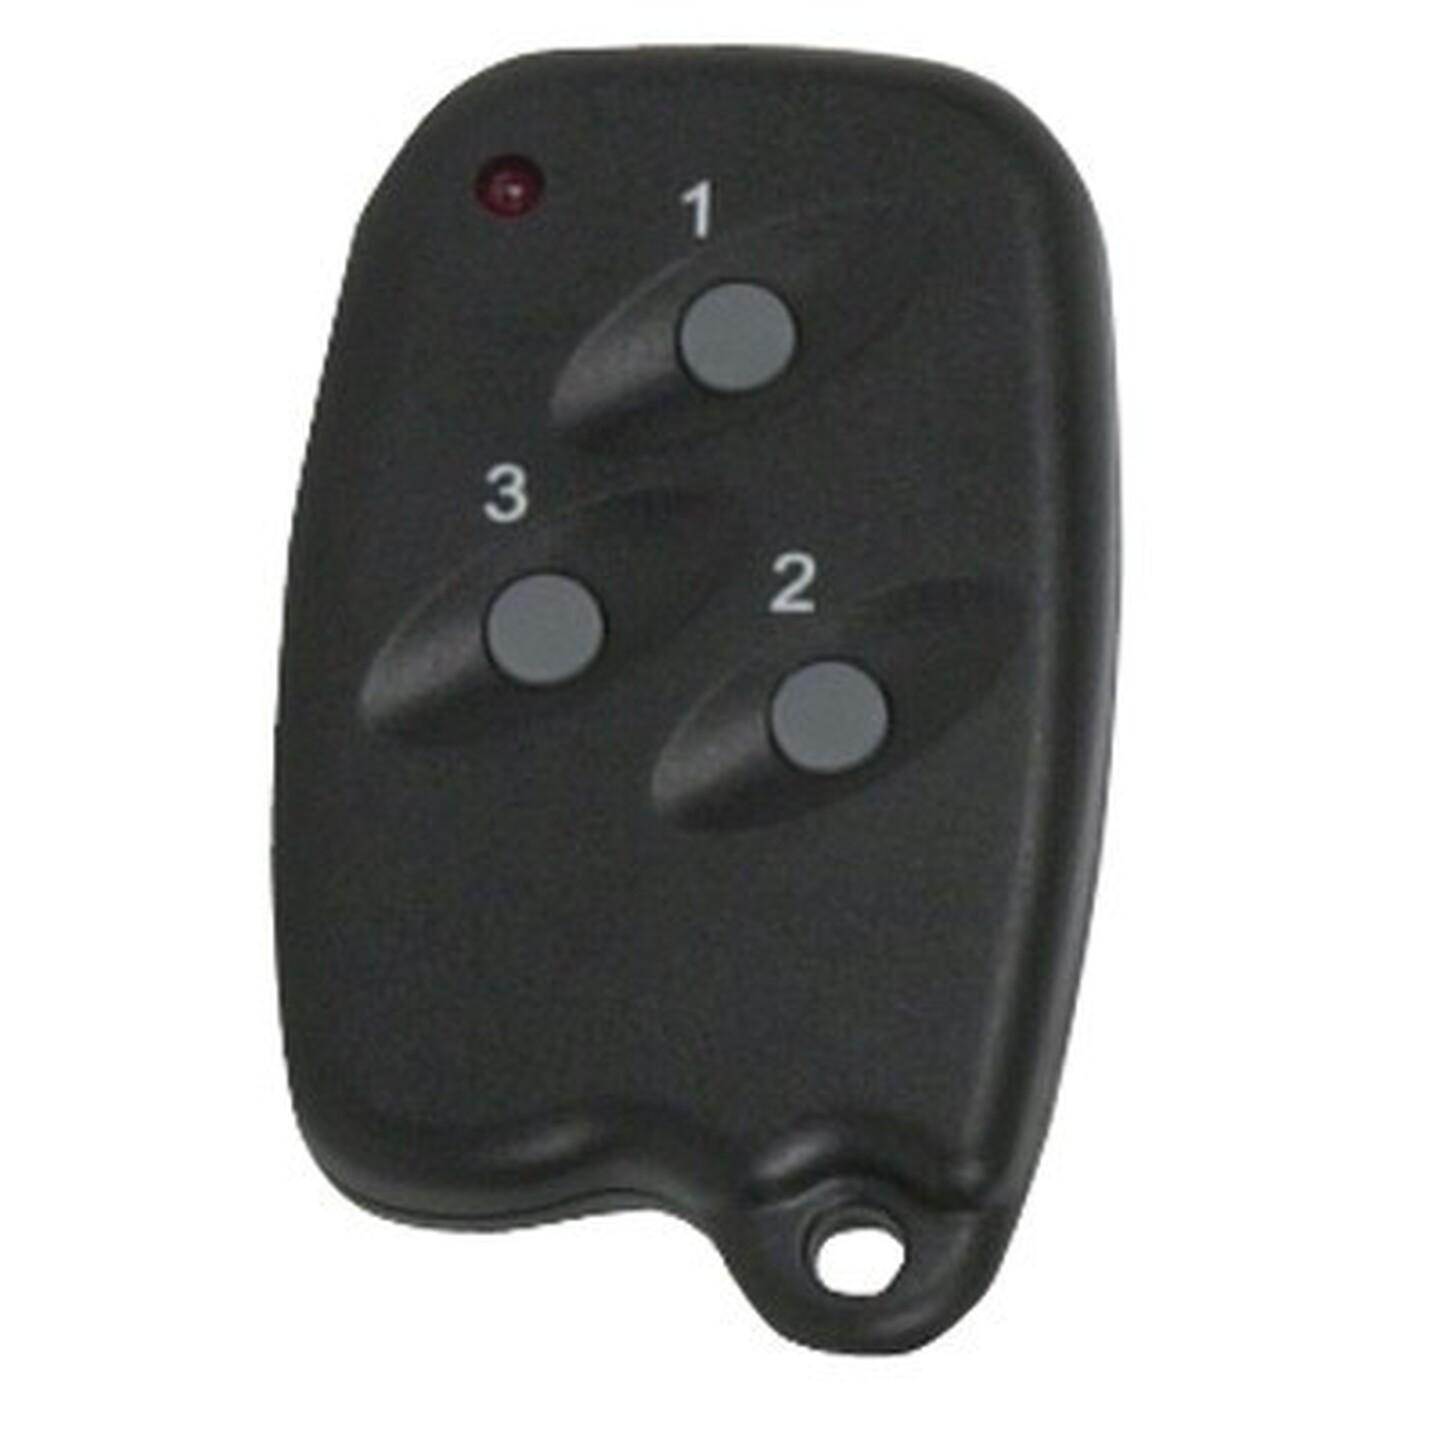 Spare Keyfob Remote for LA-5477 Alarm Panel